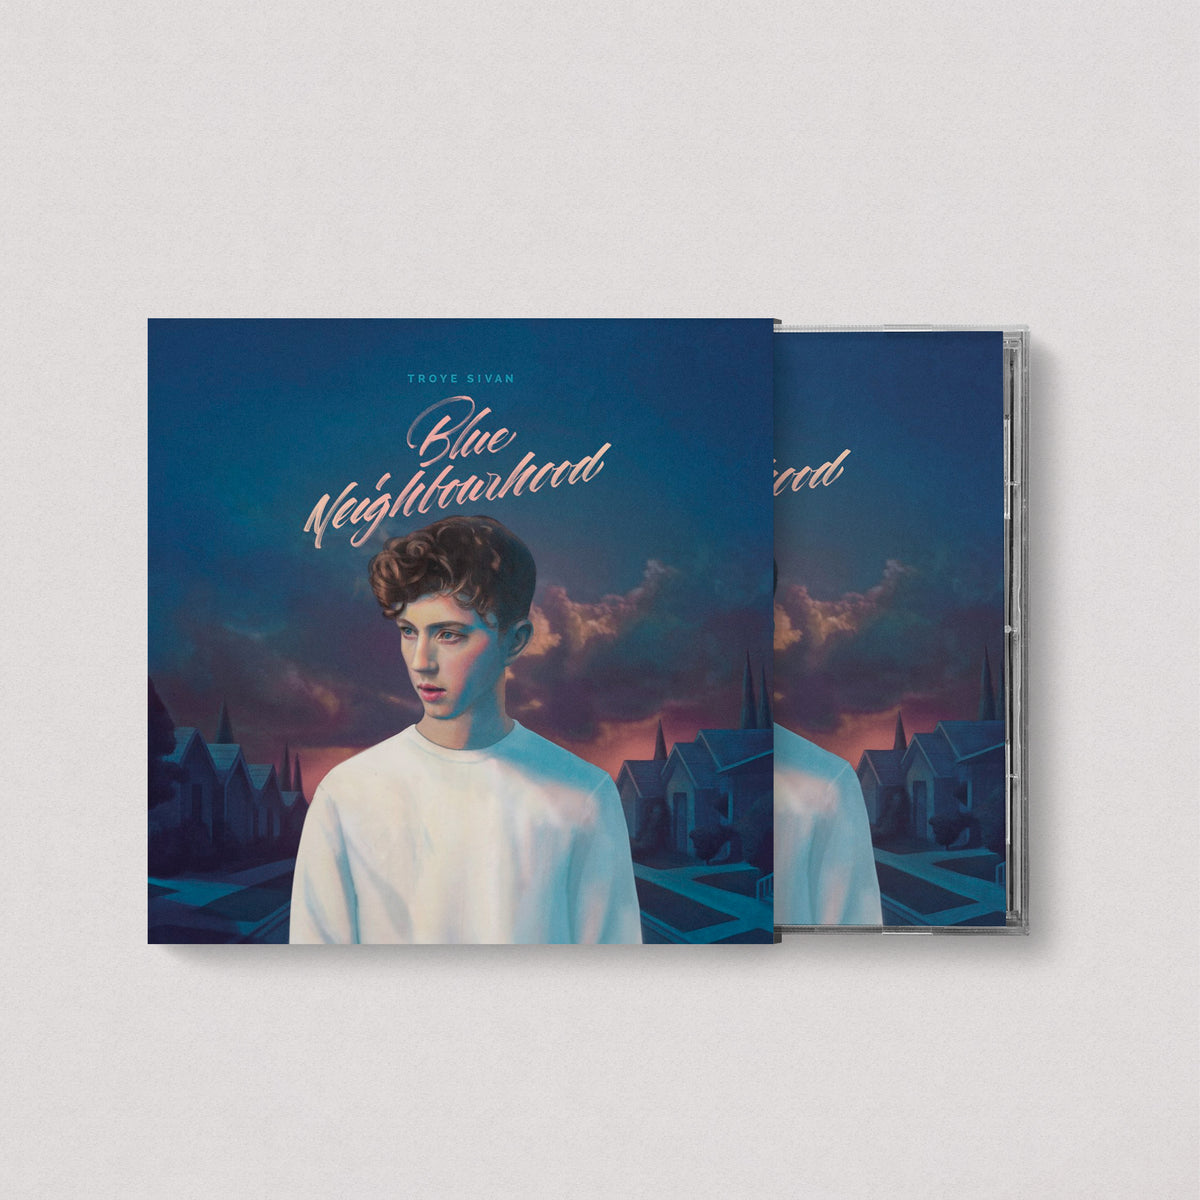 Troye Sivan - Blue Neighborhood (Deluxe Edition, CD)